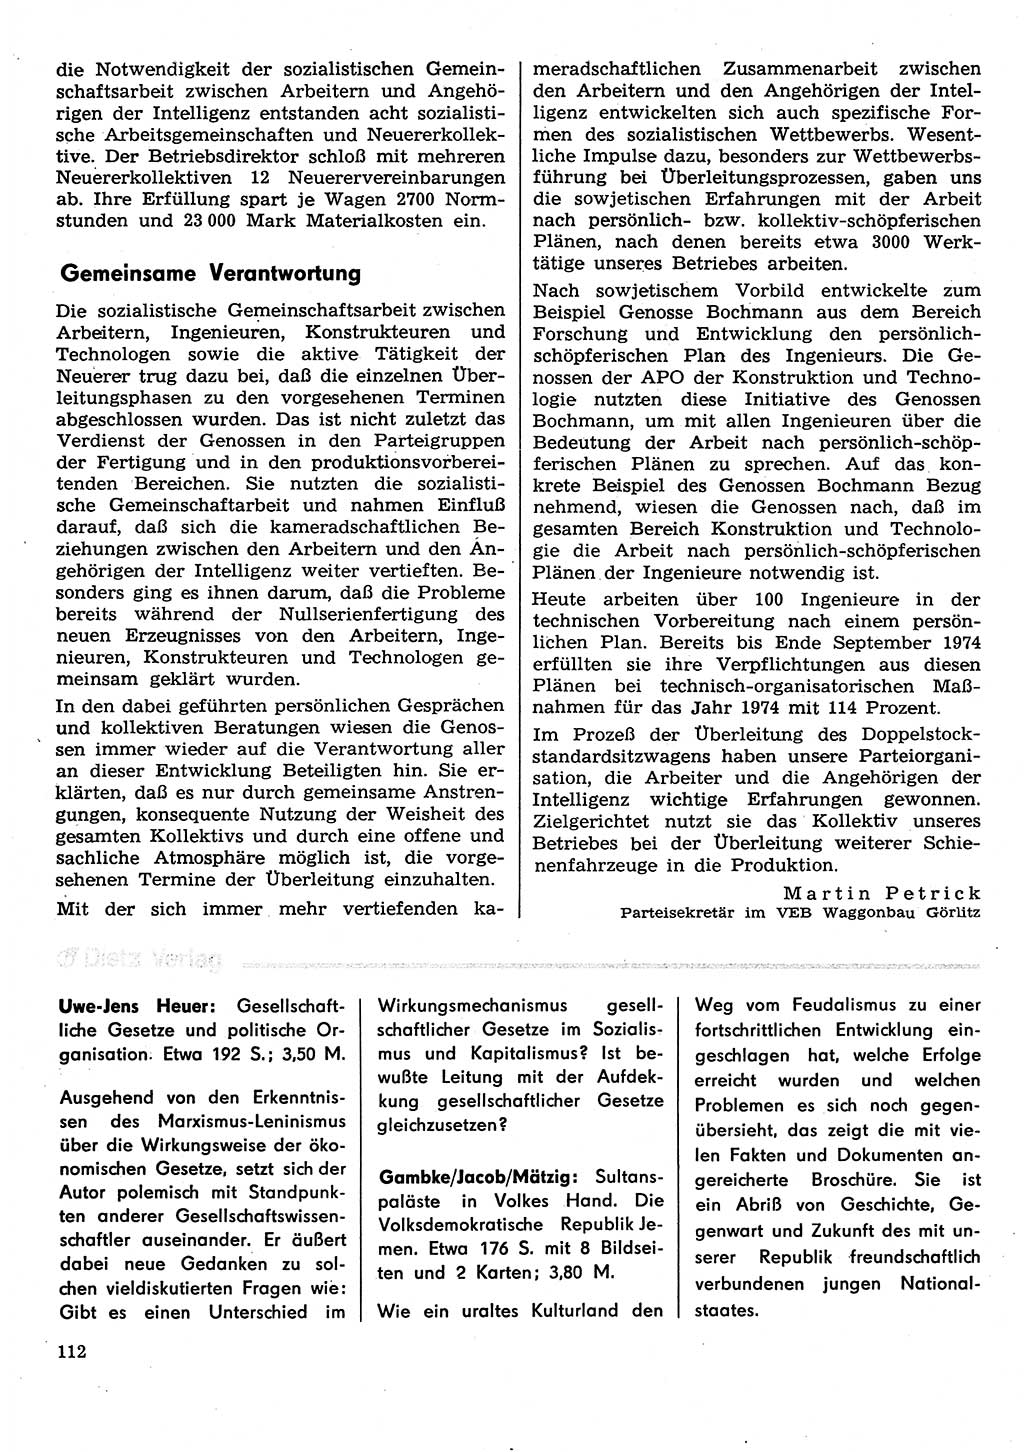 Neuer Weg (NW), Organ des Zentralkomitees (ZK) der SED (Sozialistische Einheitspartei Deutschlands) für Fragen des Parteilebens, 30. Jahrgang [Deutsche Demokratische Republik (DDR)] 1975, Seite 112 (NW ZK SED DDR 1975, S. 112)